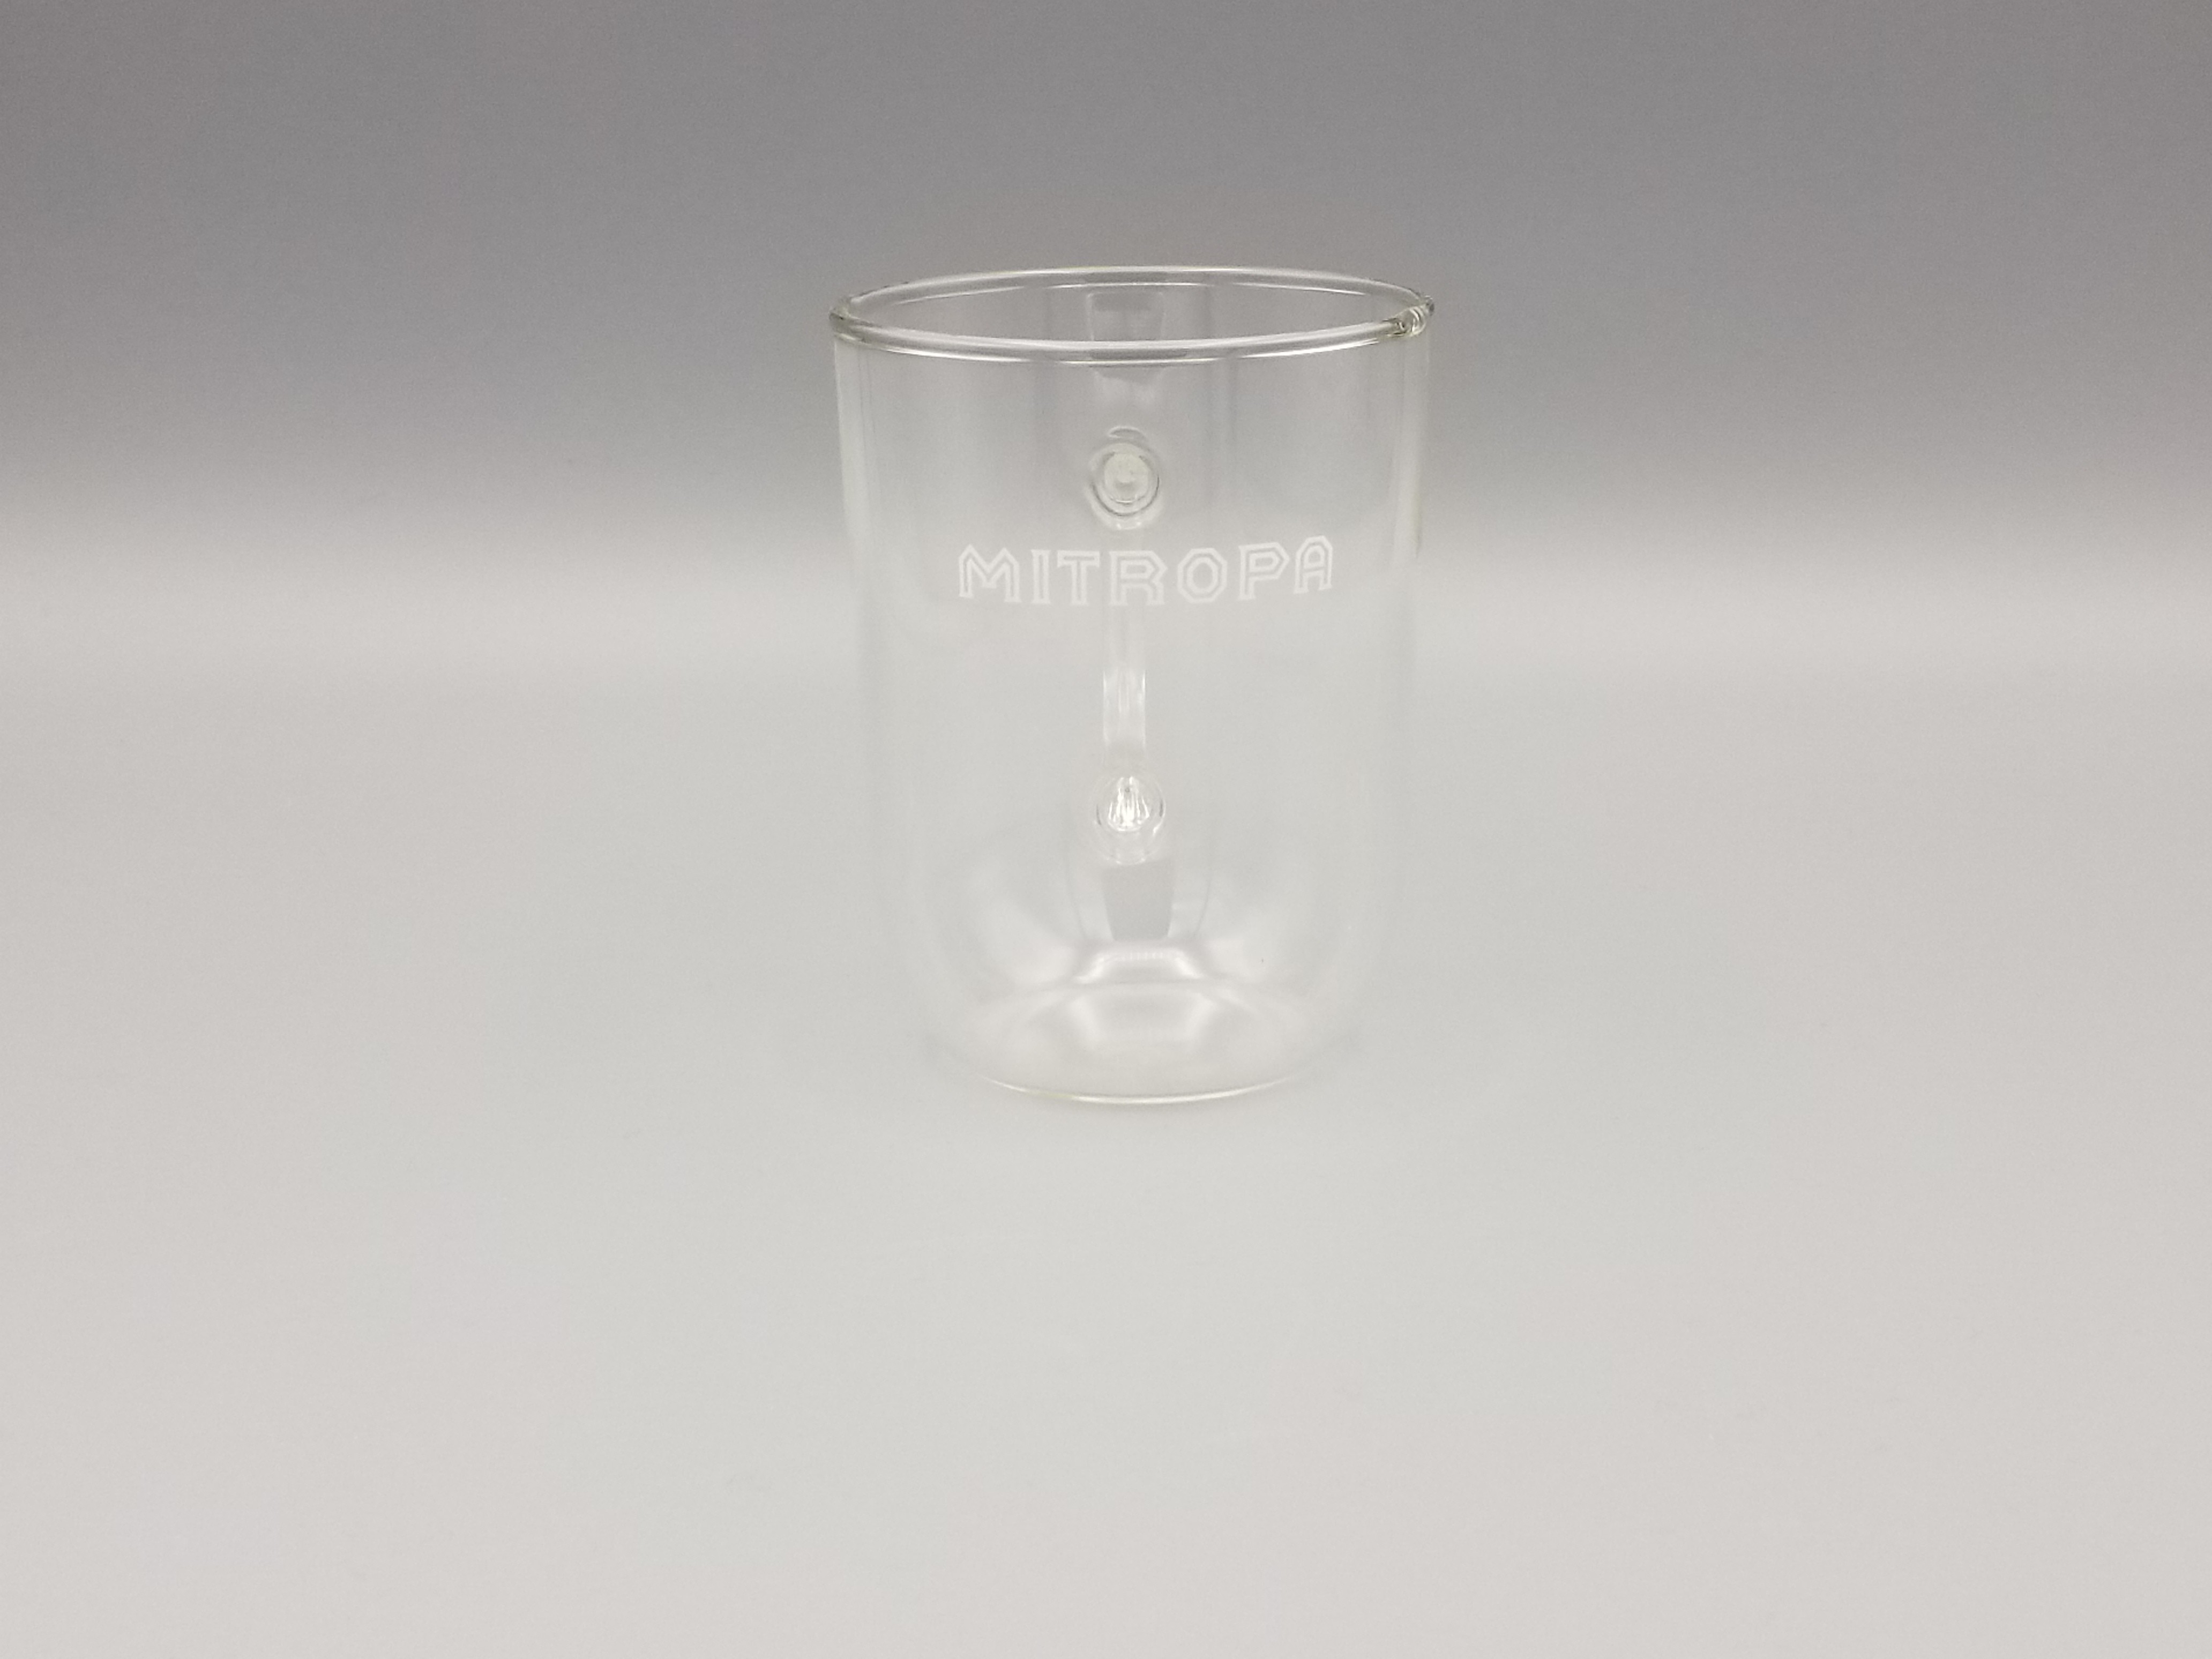 MITROPA Teeglas (Mobile Welten e.V. CC BY-SA)